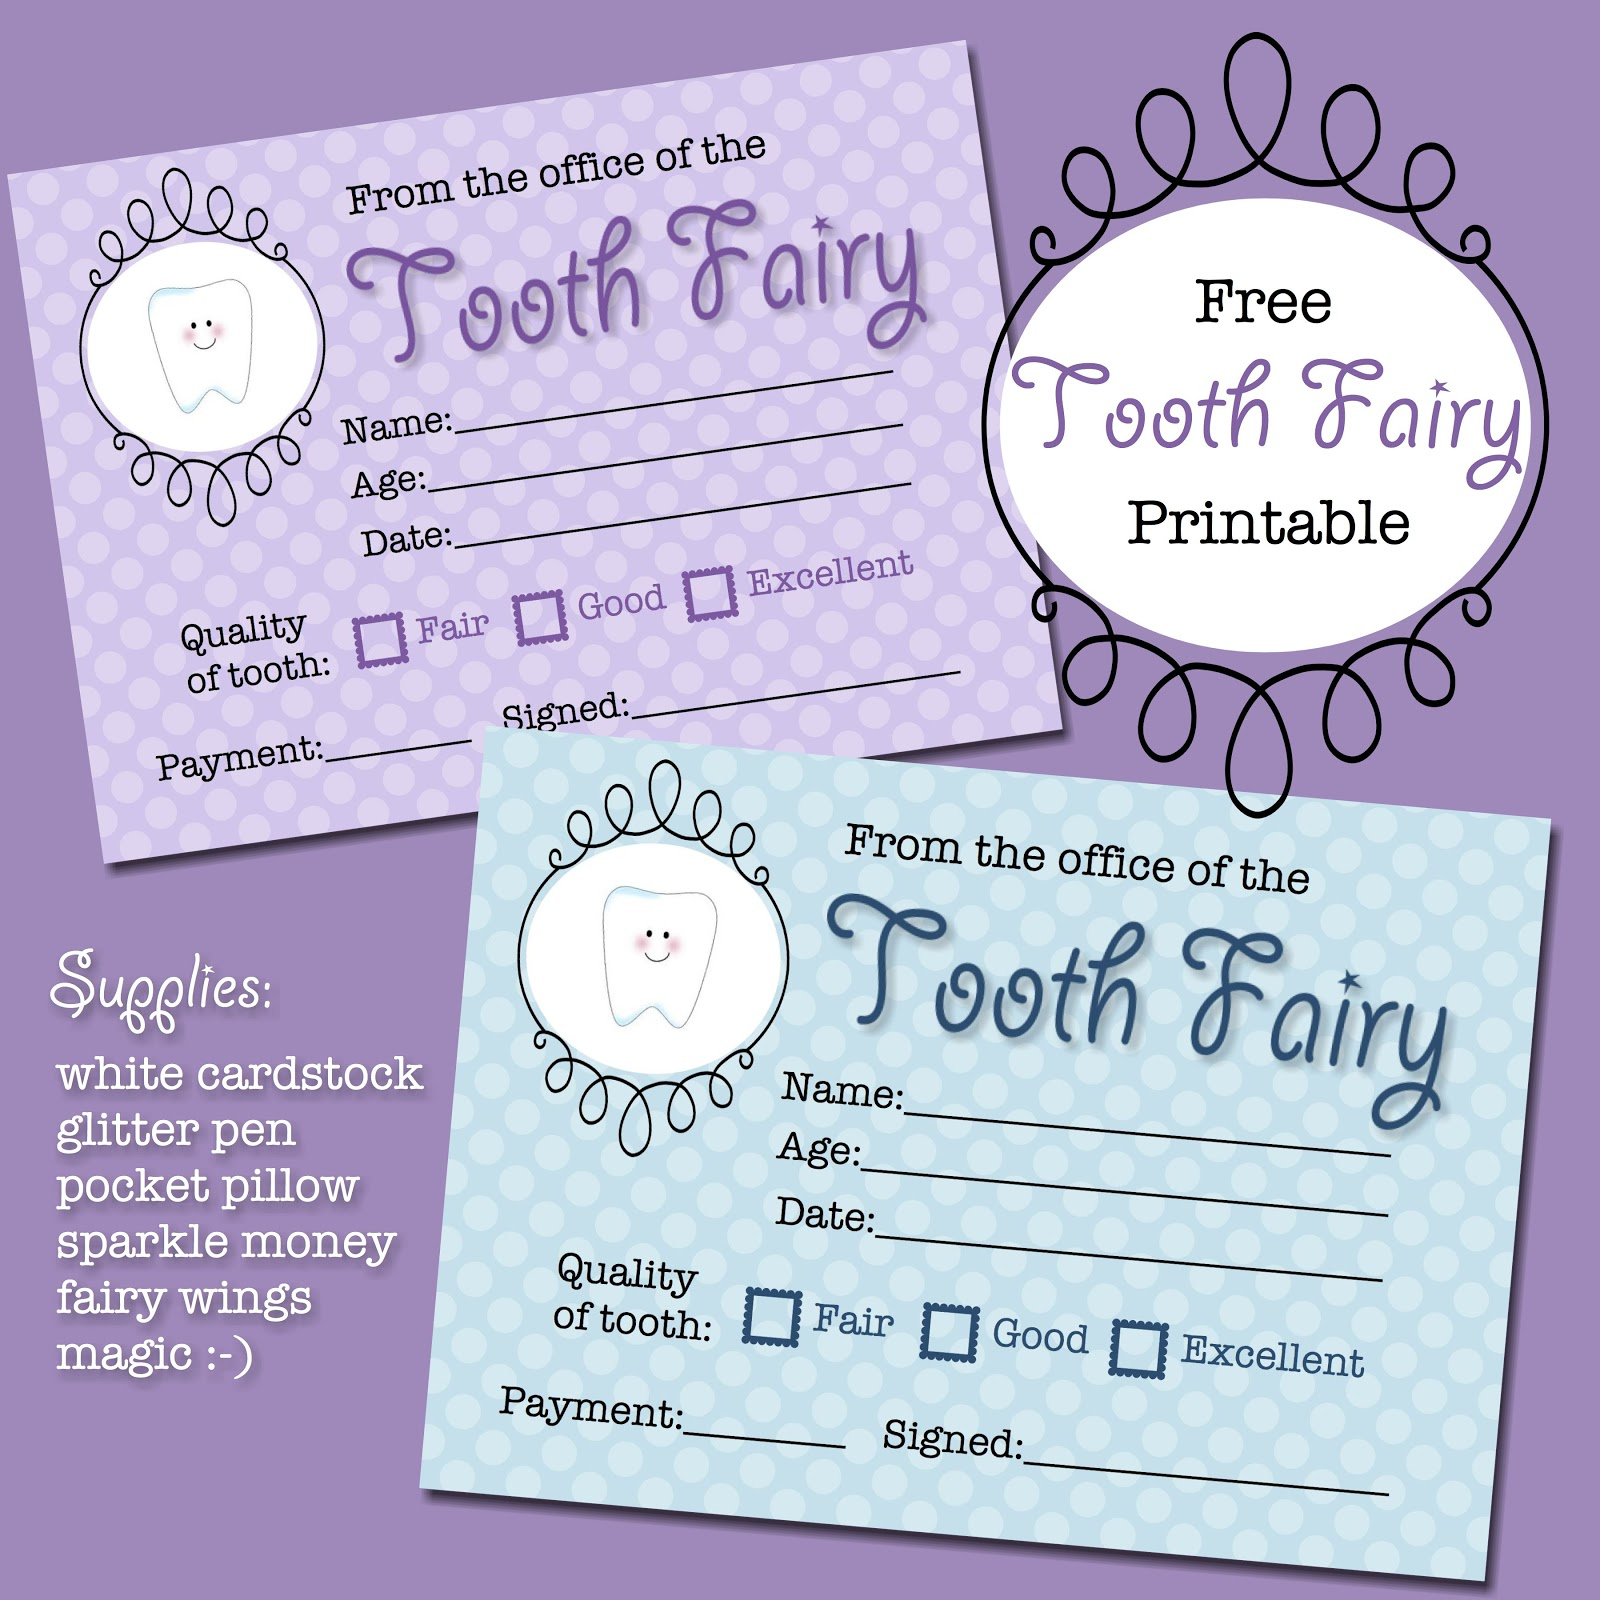 The Polka Dot Posie: Free Tooth Fairy Receipt Printable - Free Printable Tooth Fairy Pictures